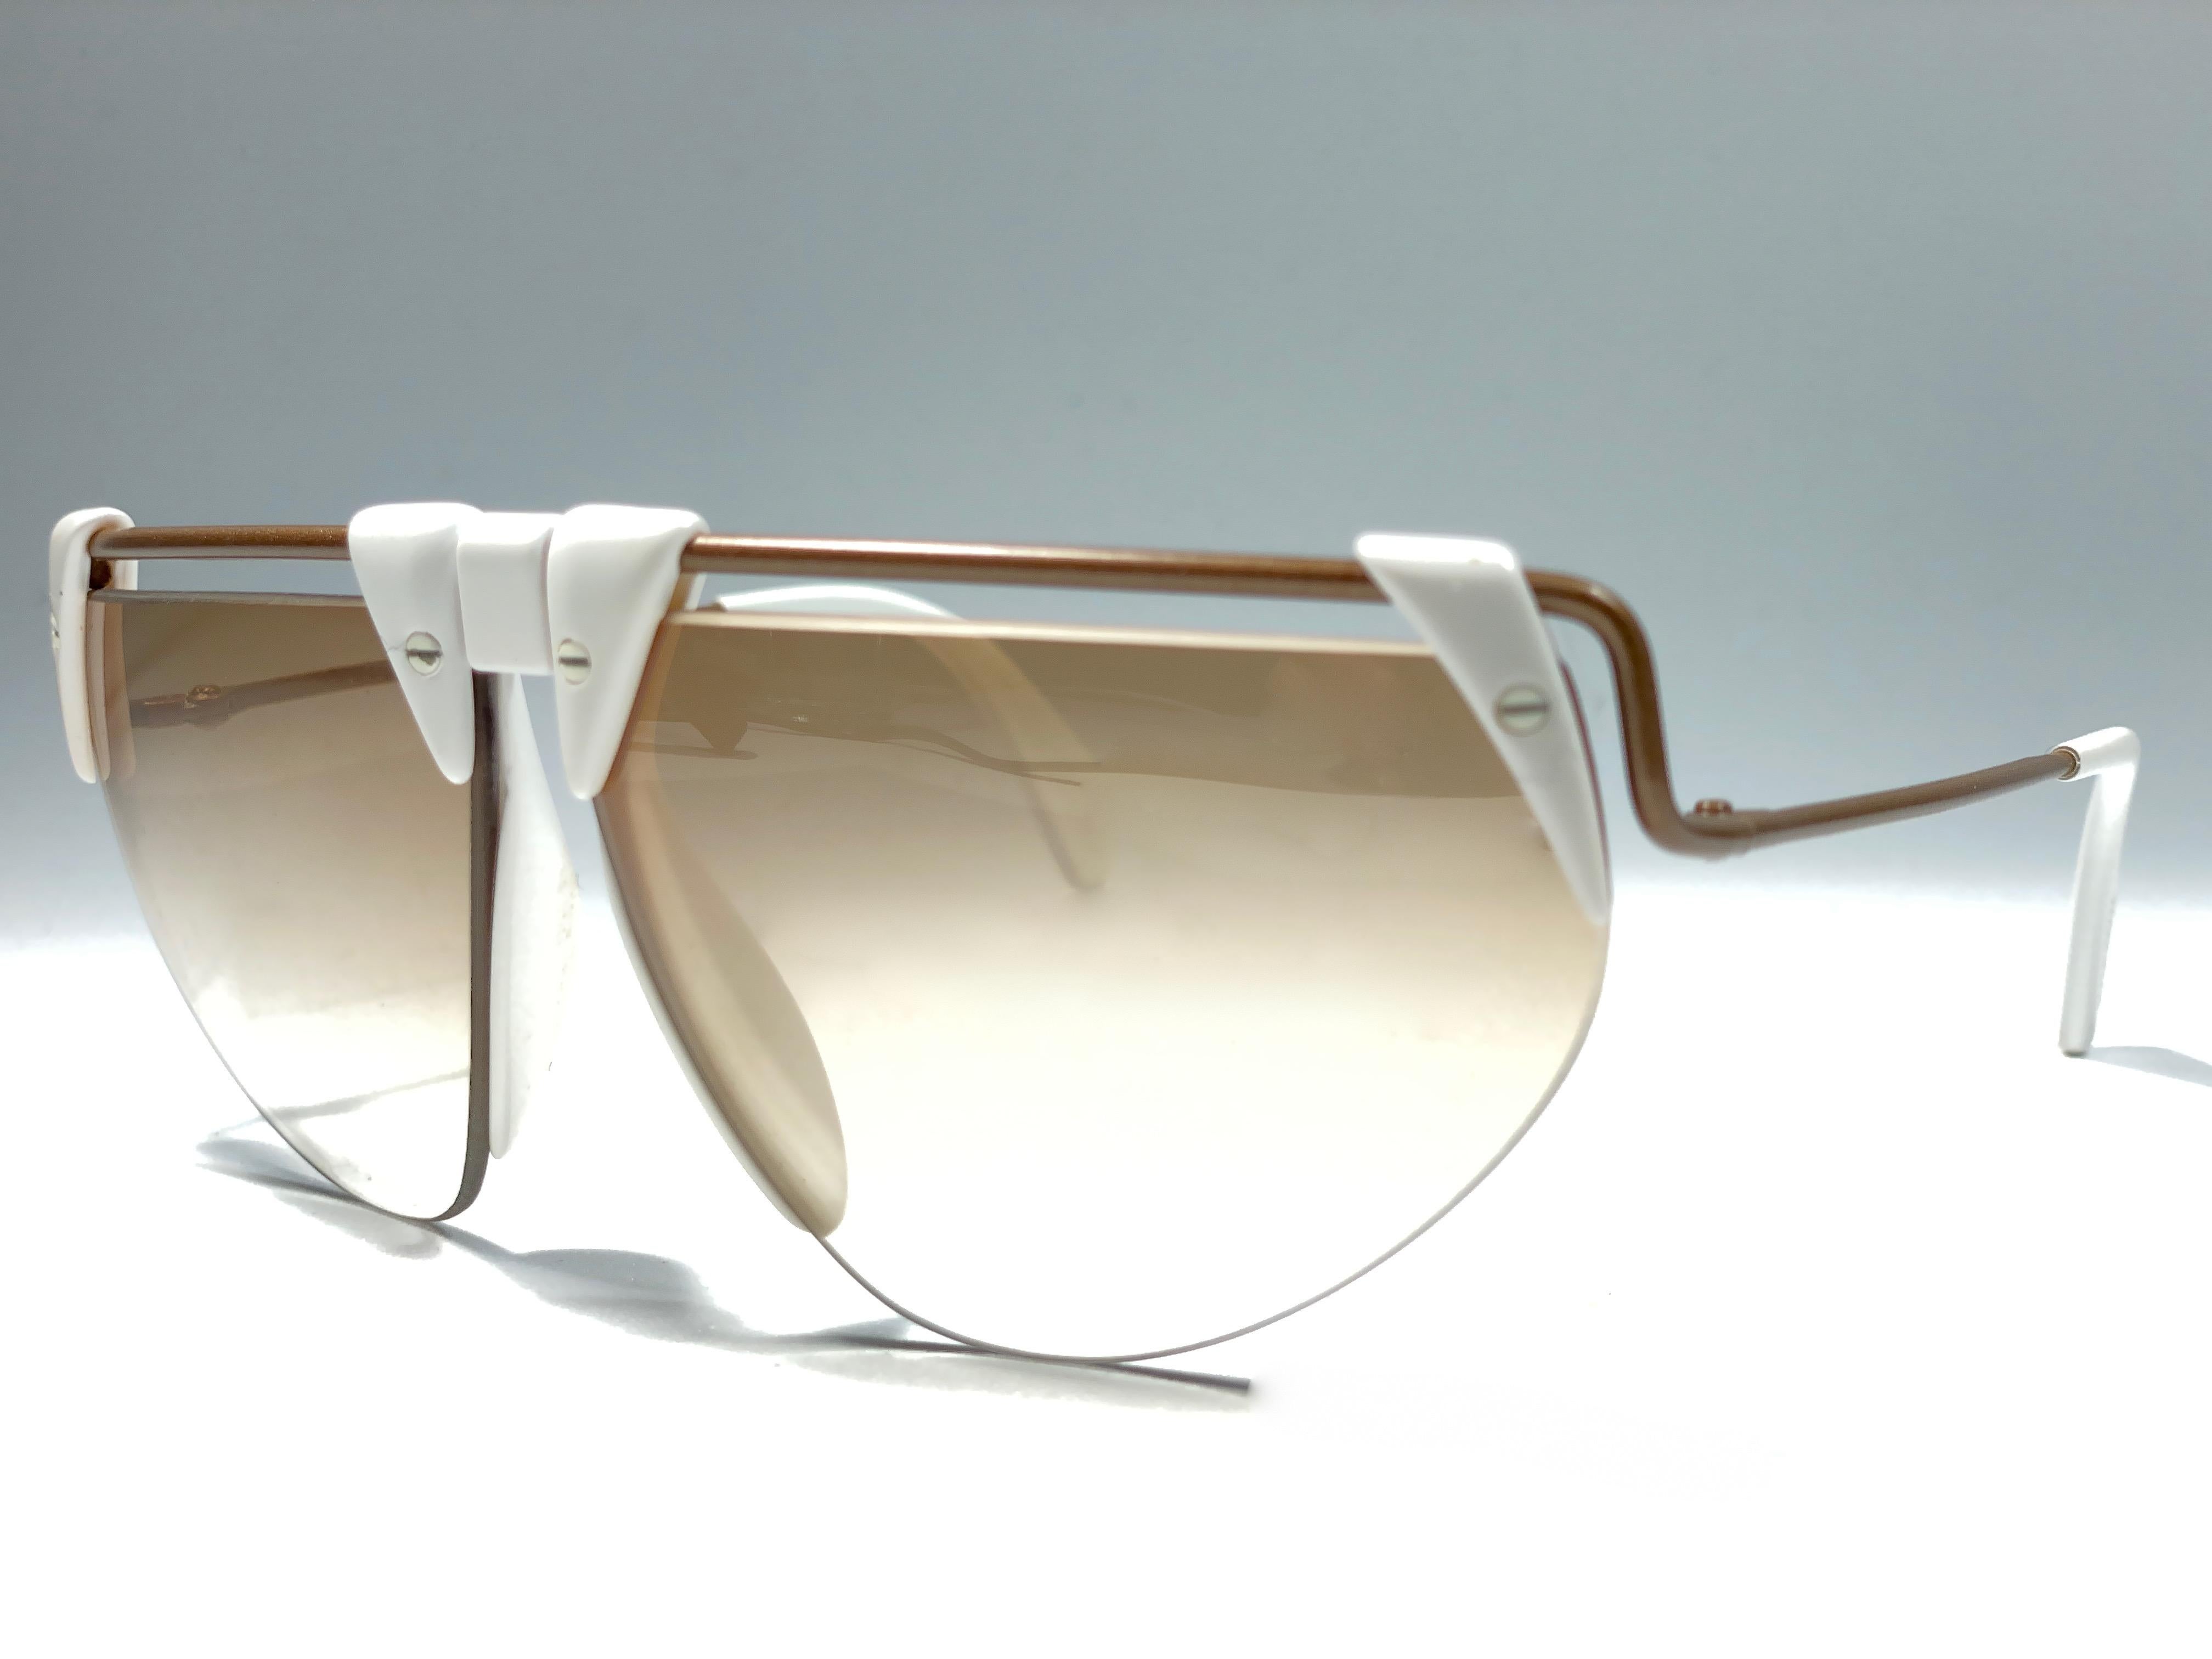 white futuristic sunglasses